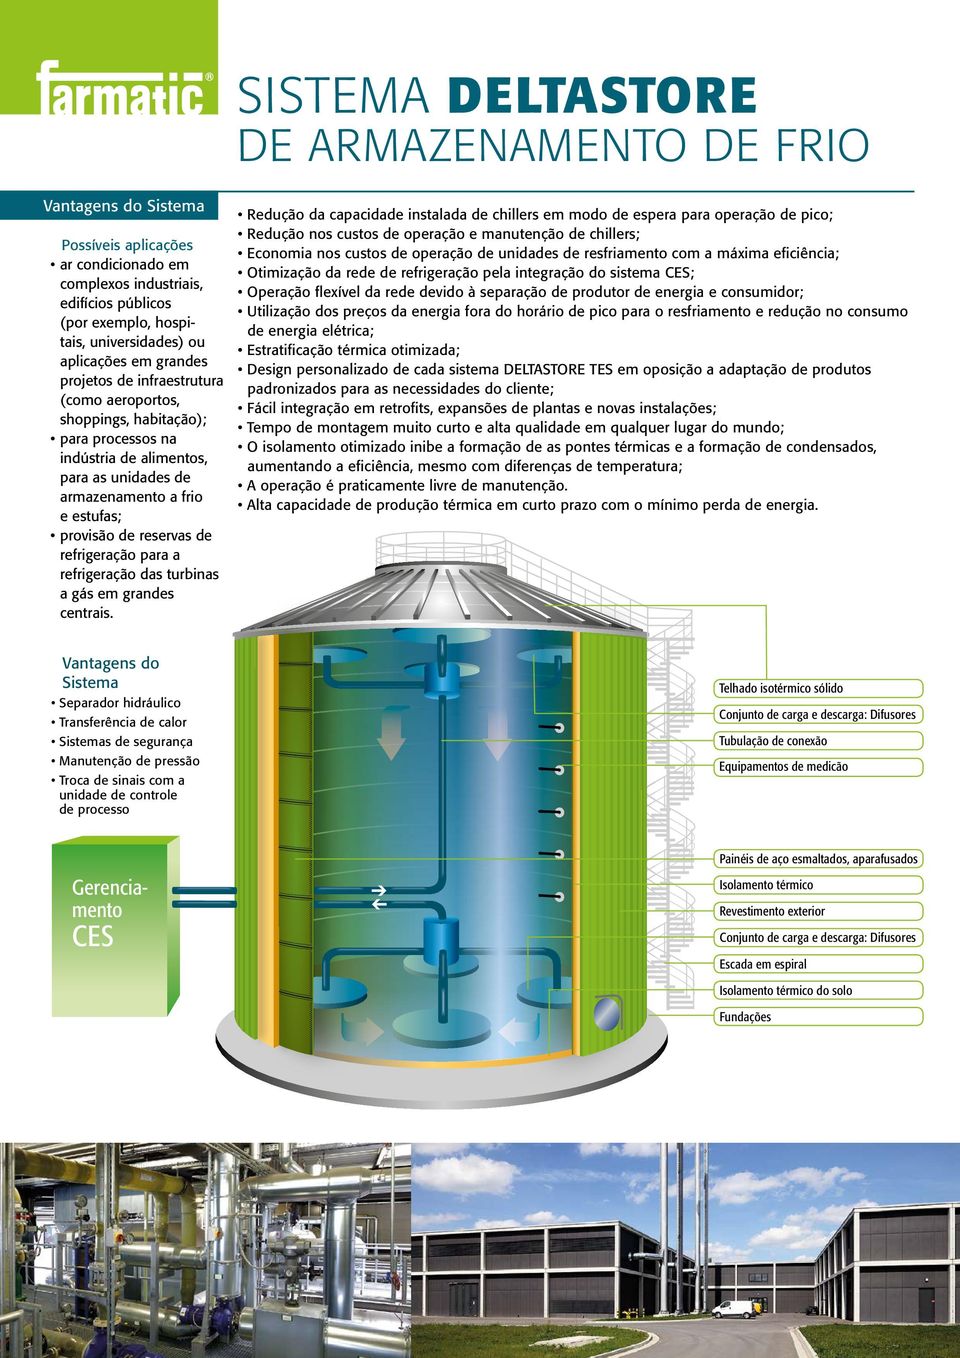 reservas de refrigeração para a refrigeração das turbinas a gás em grandes centrais.